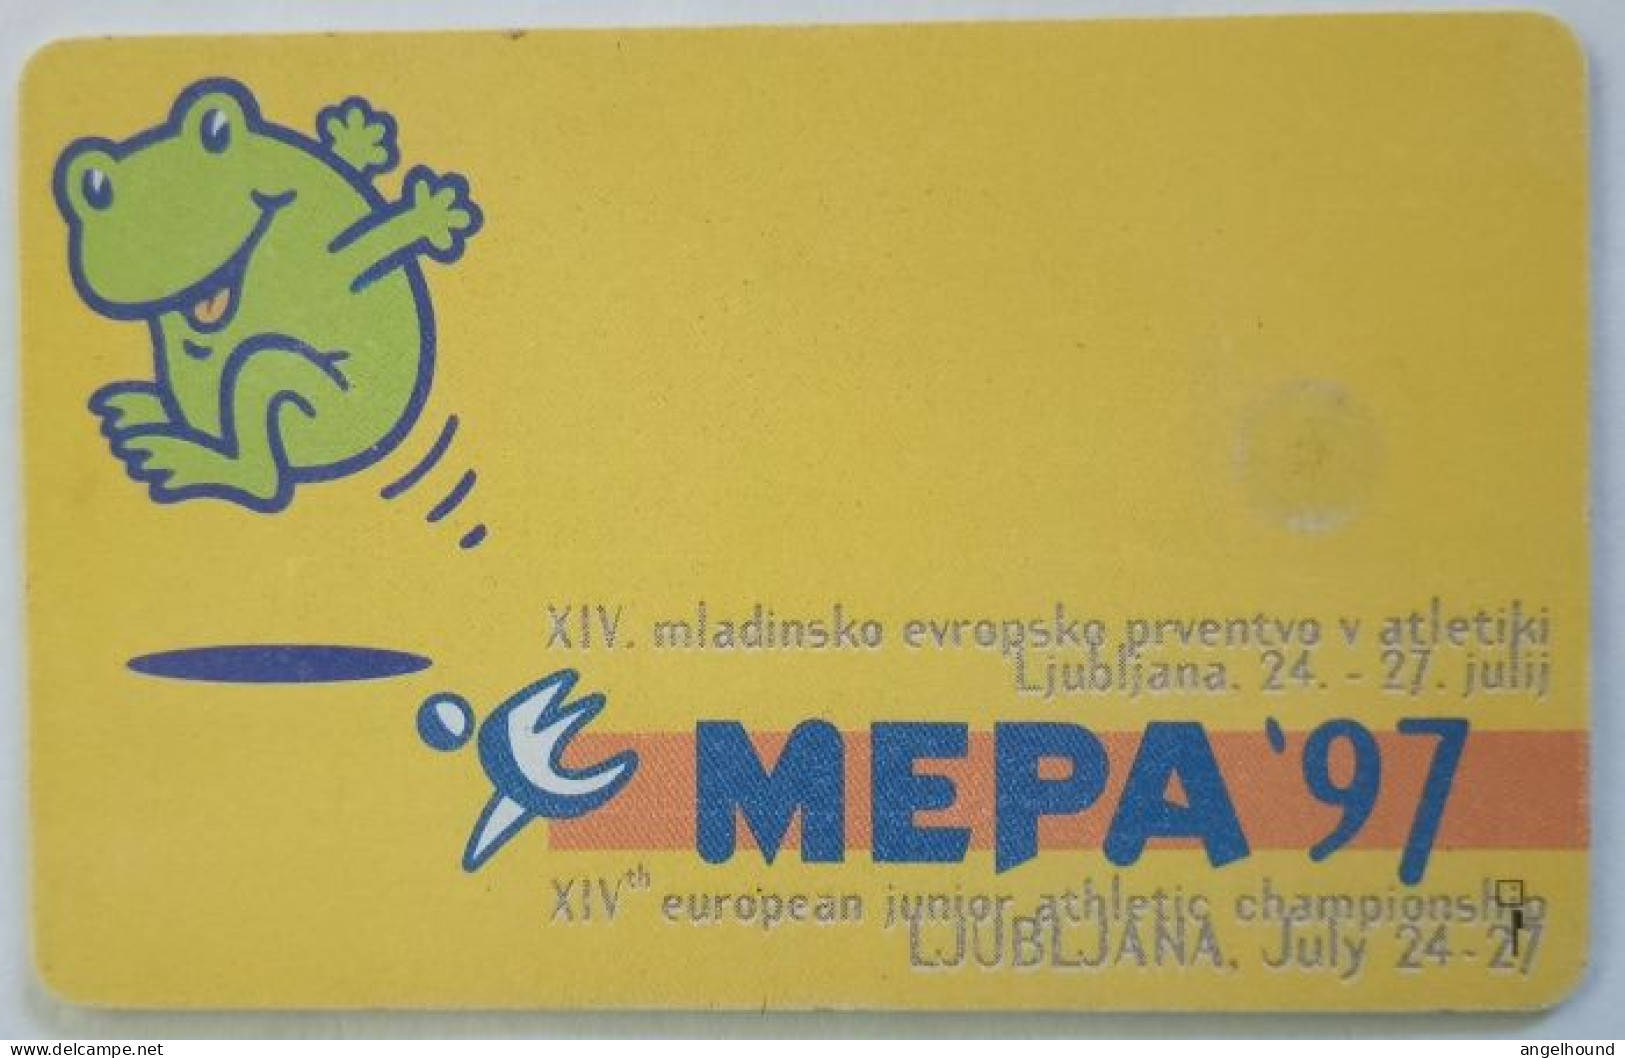 Slovenia 100 Unit  Chip Card - Kp Je Pogovor Nacin Zivljenja / MEPA ' 97 - Slowenien